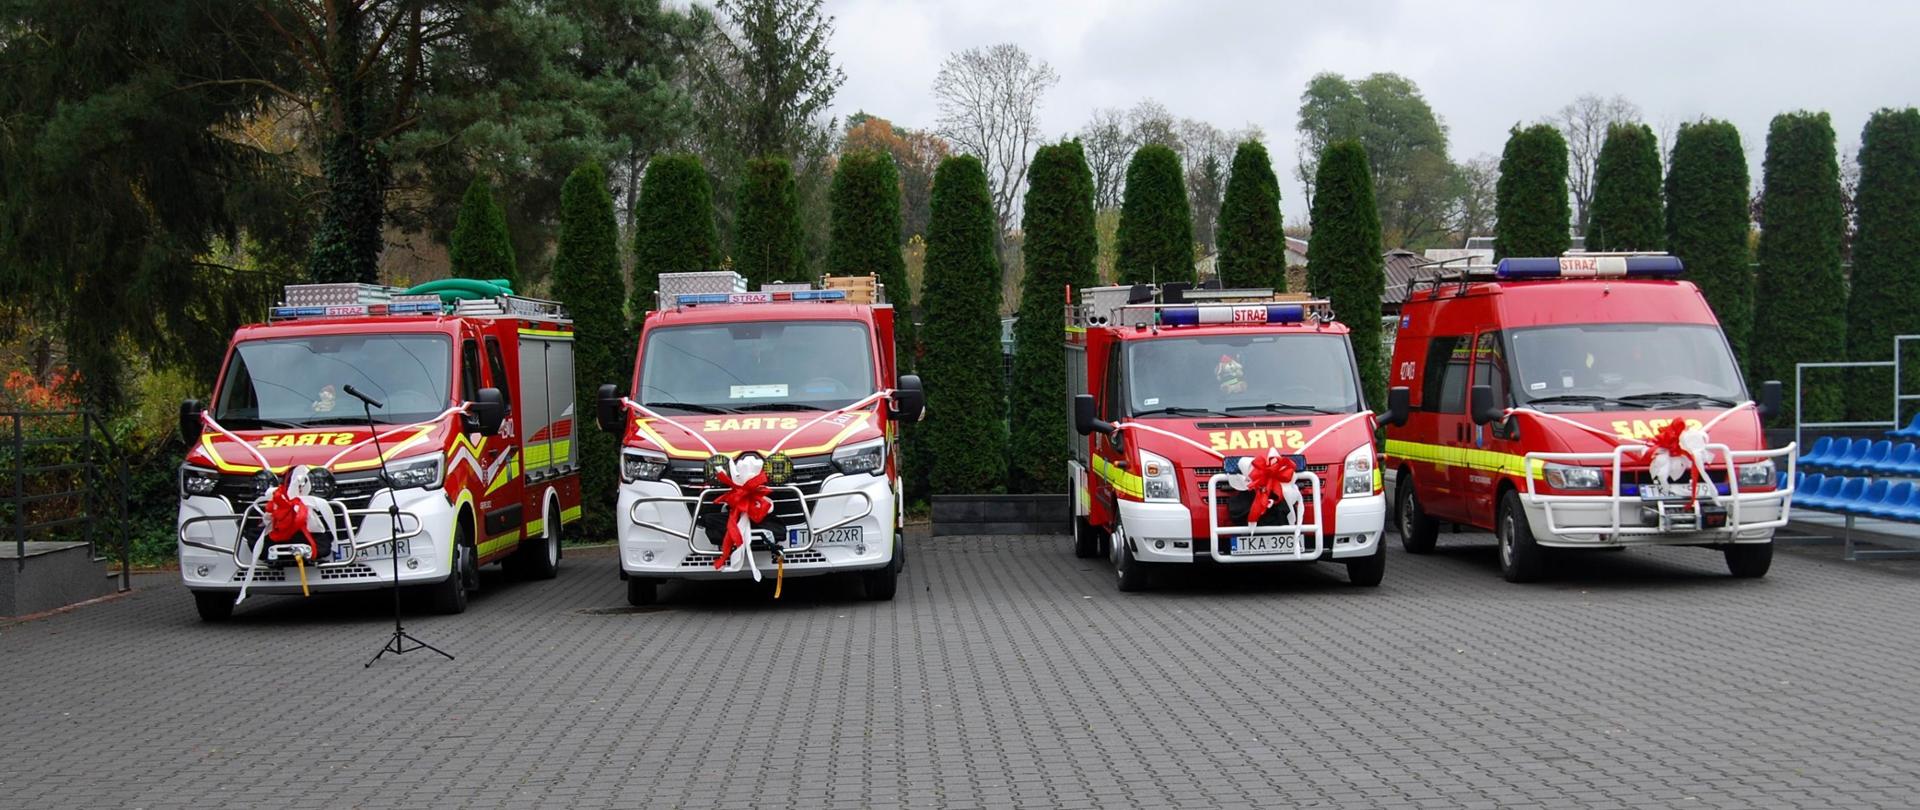 Uroczysty apel z okazji przekazania samochodów dla jednostek Ochotniczych Straży Pożarnych z terenu gminy Bejsce – powiat kazimierski